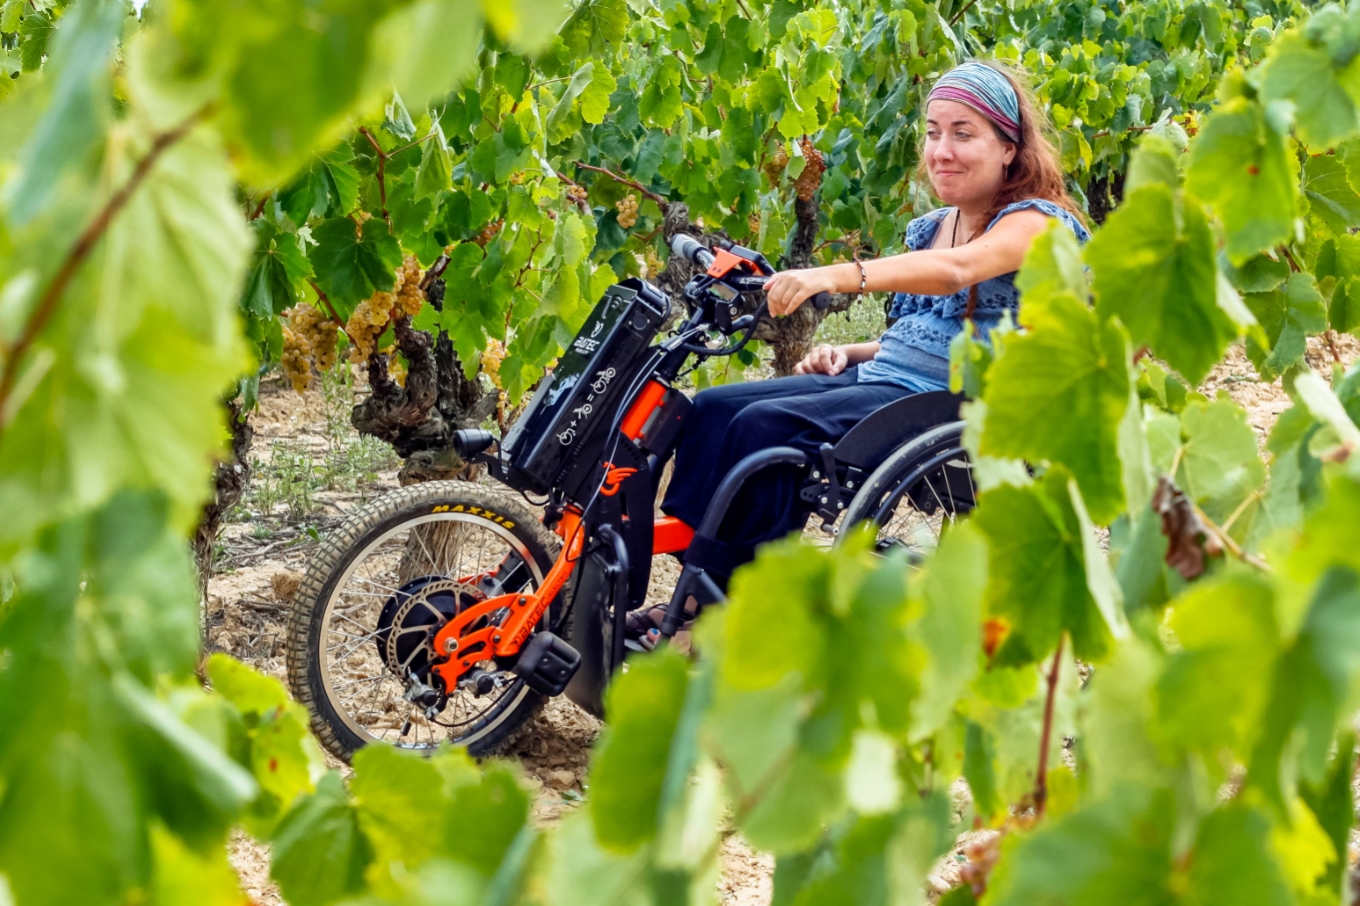 enoturismo accesible silla de ruedas Castilla La Mancha Spain wine bodega vino